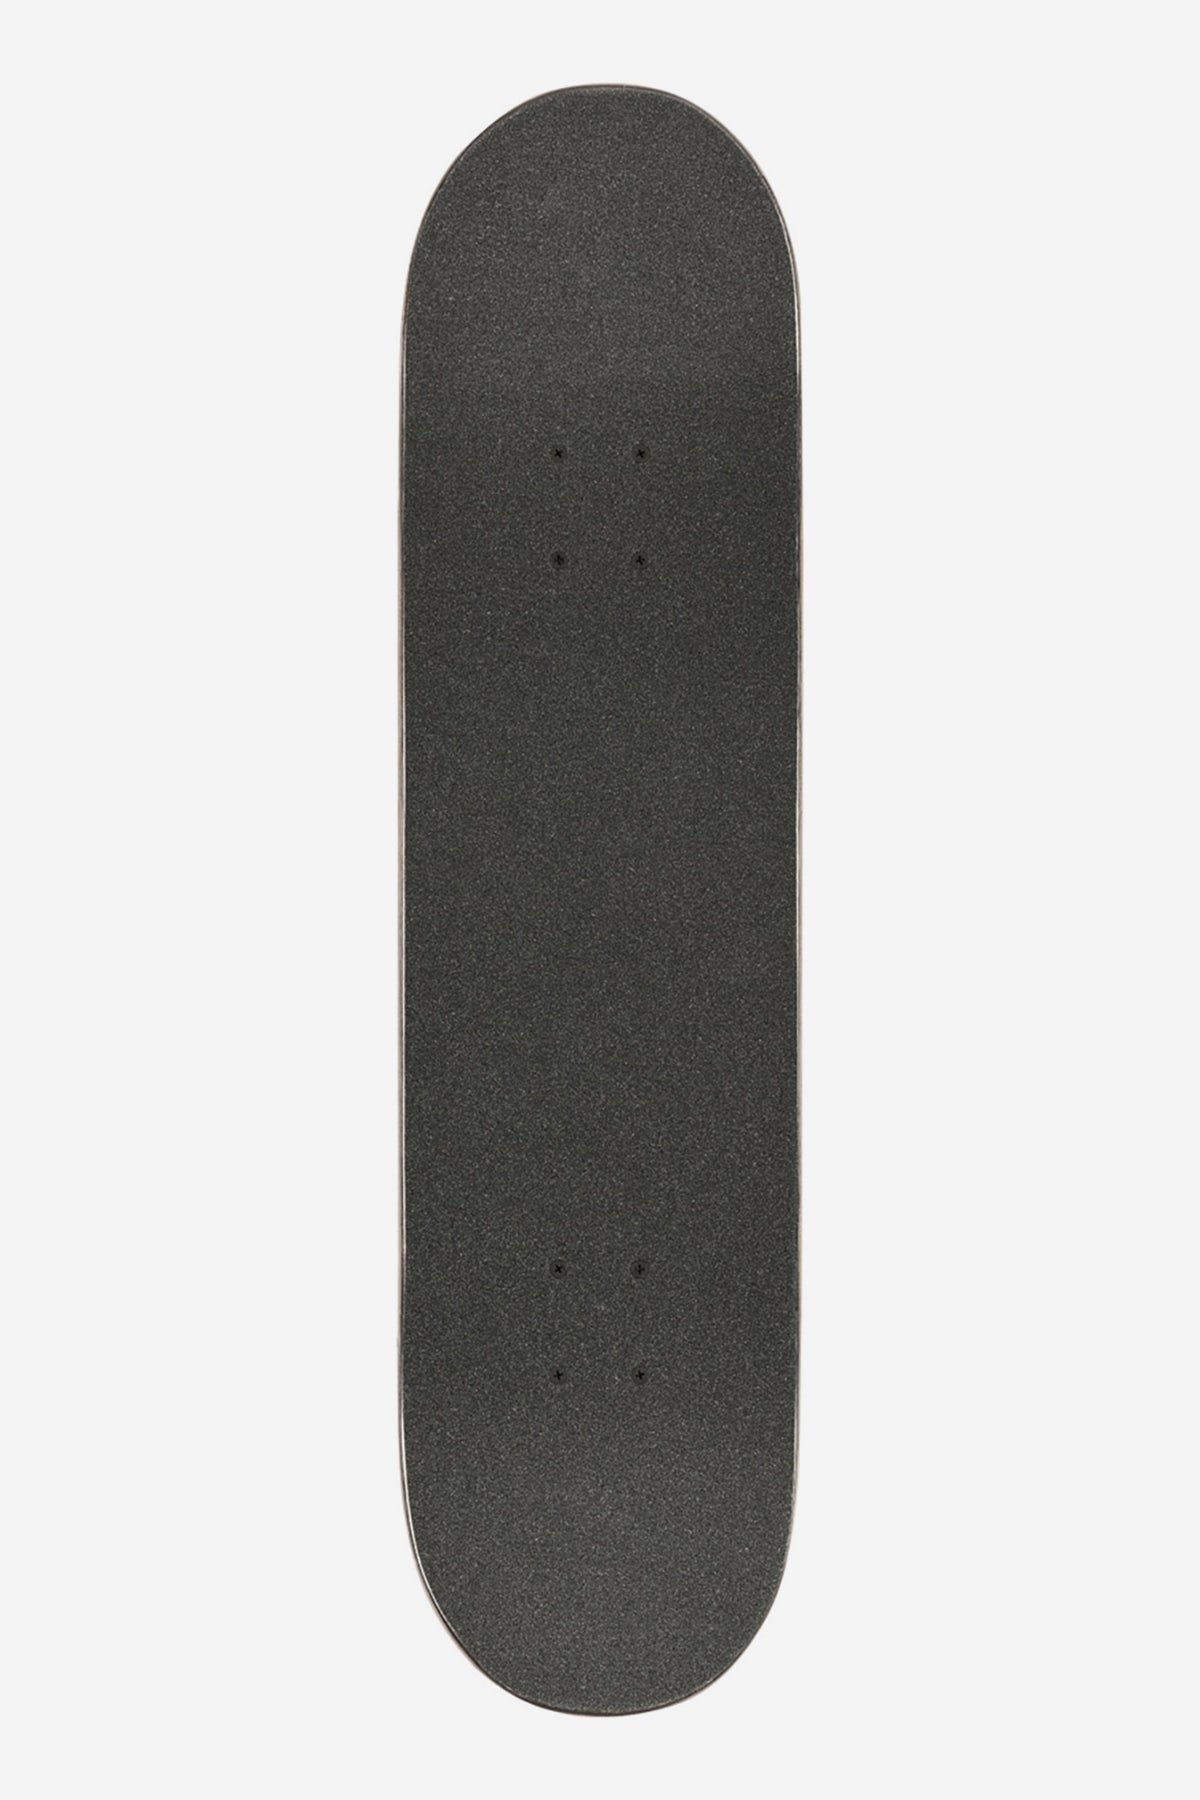 Globe - Goodstock - Aus White - 8.0" Komplett Skateboard